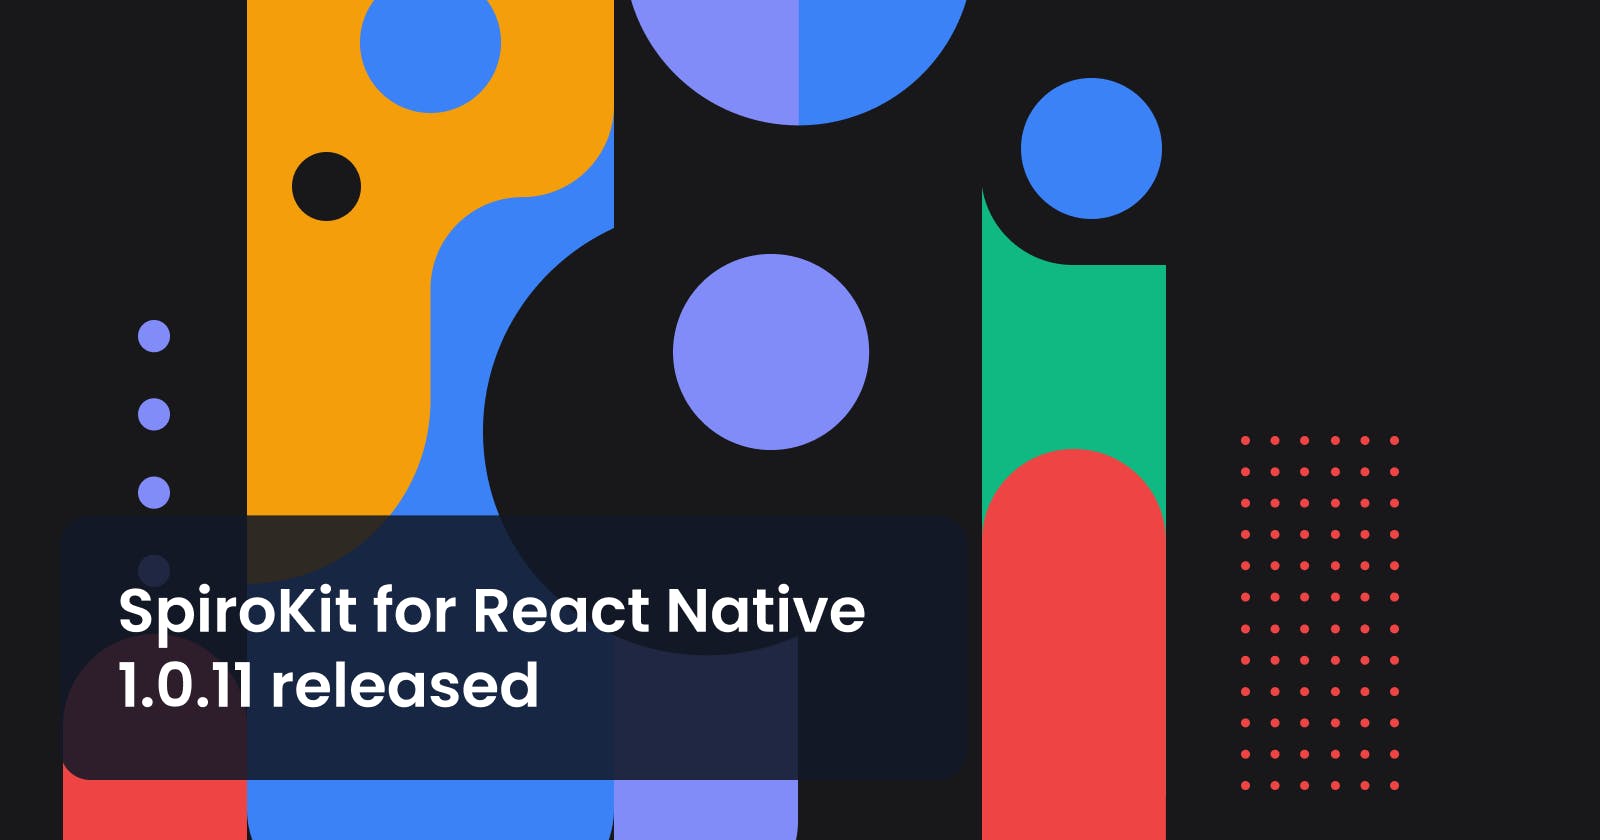 SpiroKit for React Native 1.0.11 released